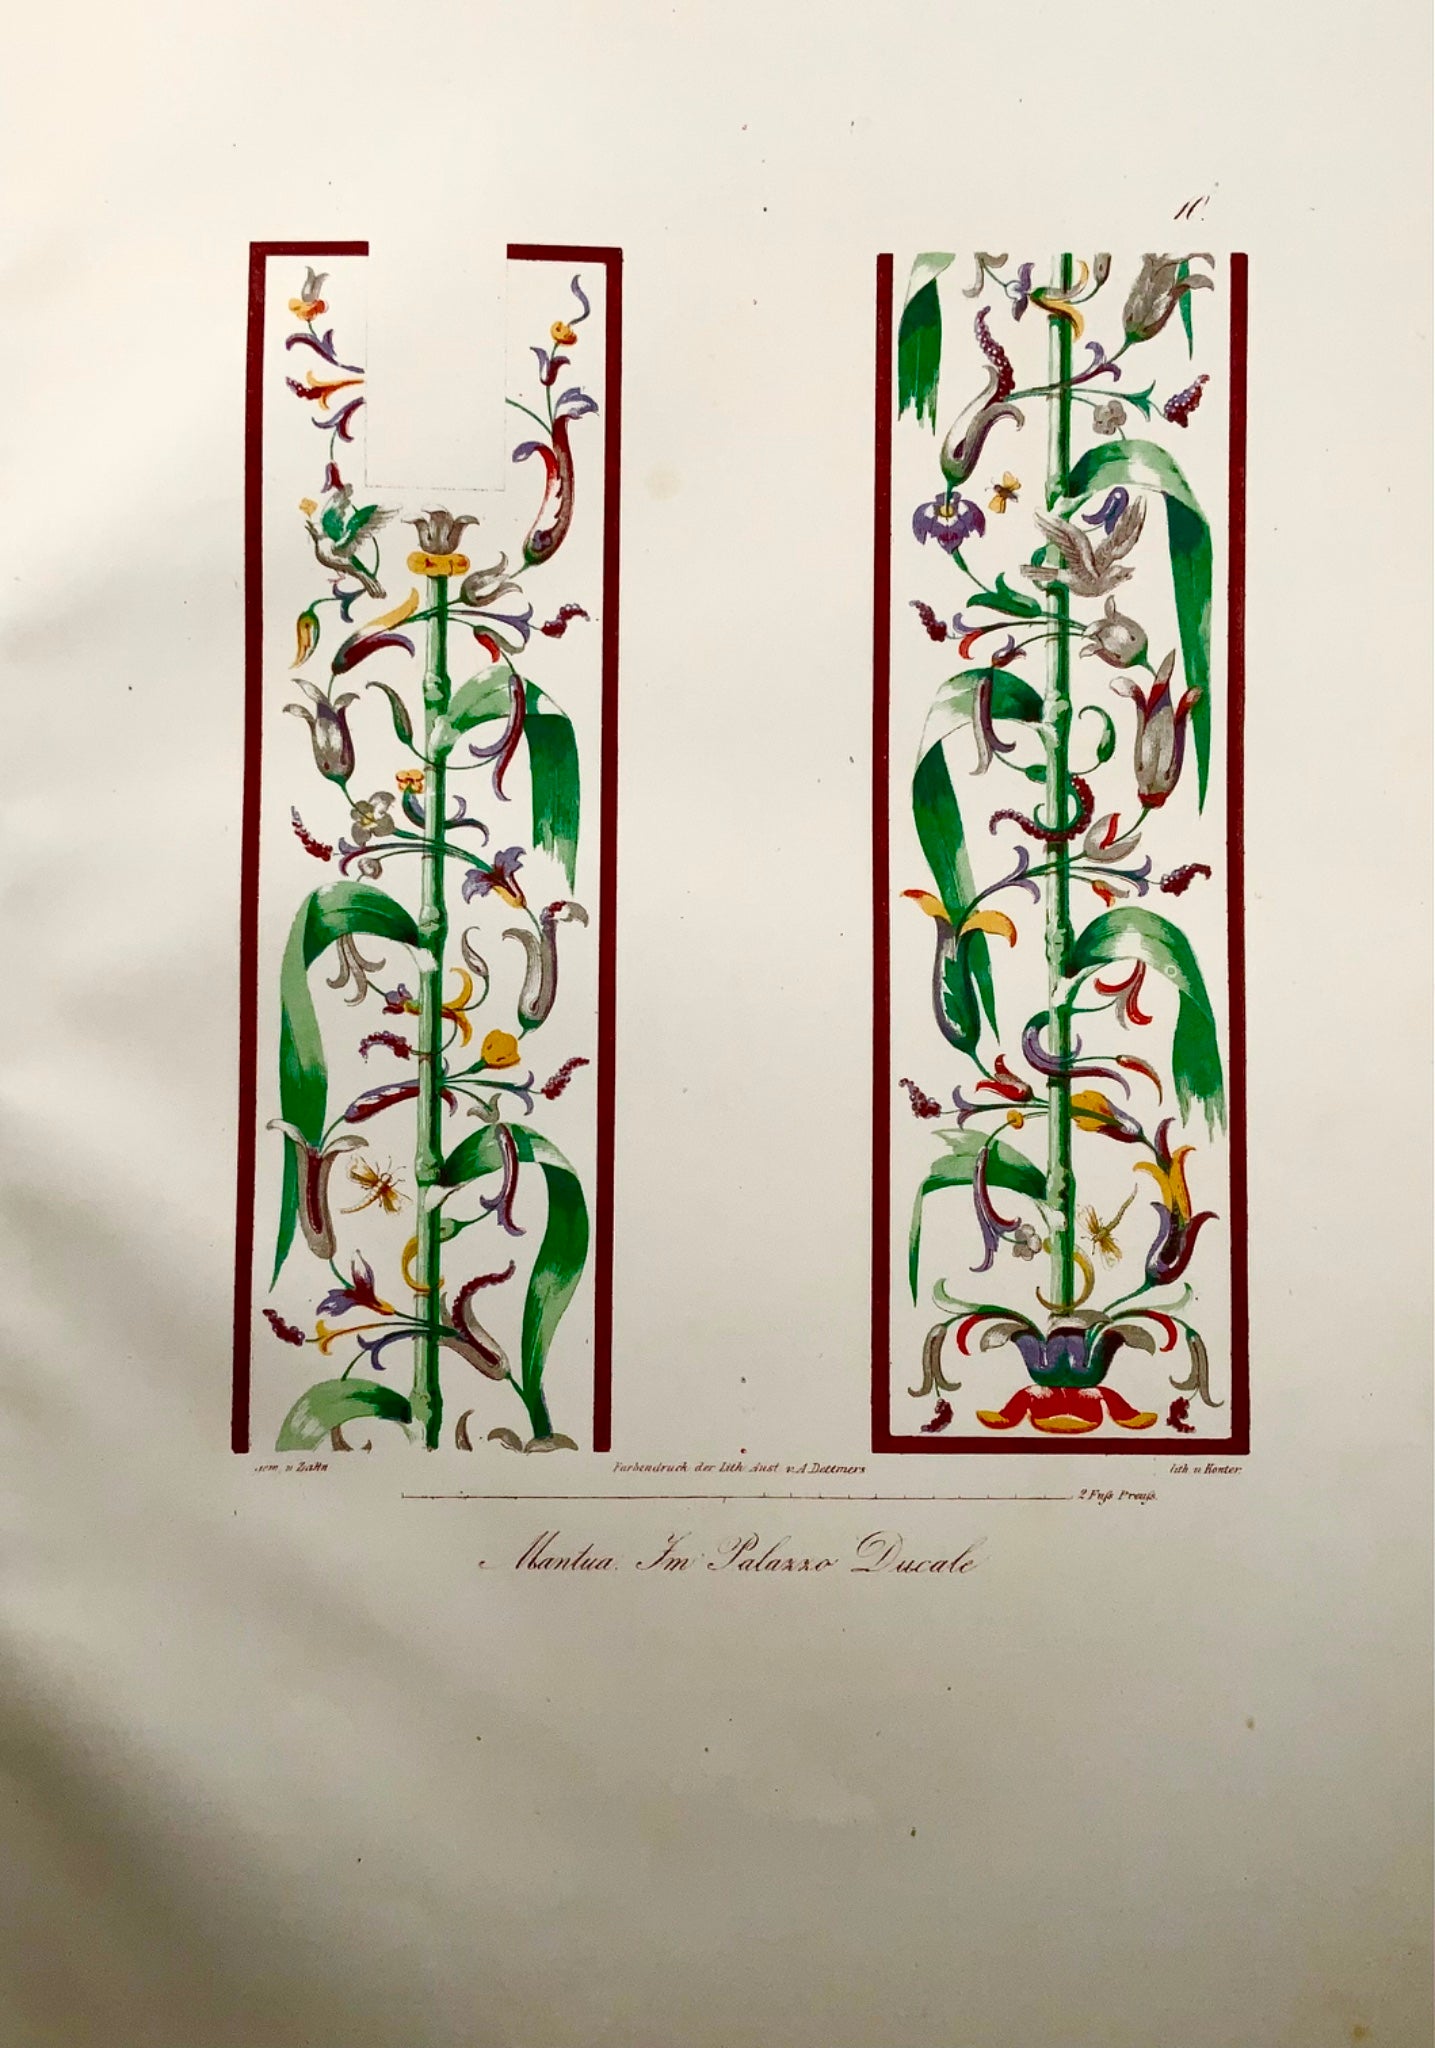 1843 Italie, fresque, Mantoue, Zahn, grand in-folio, première lithographie en couleurs, art classique (x)